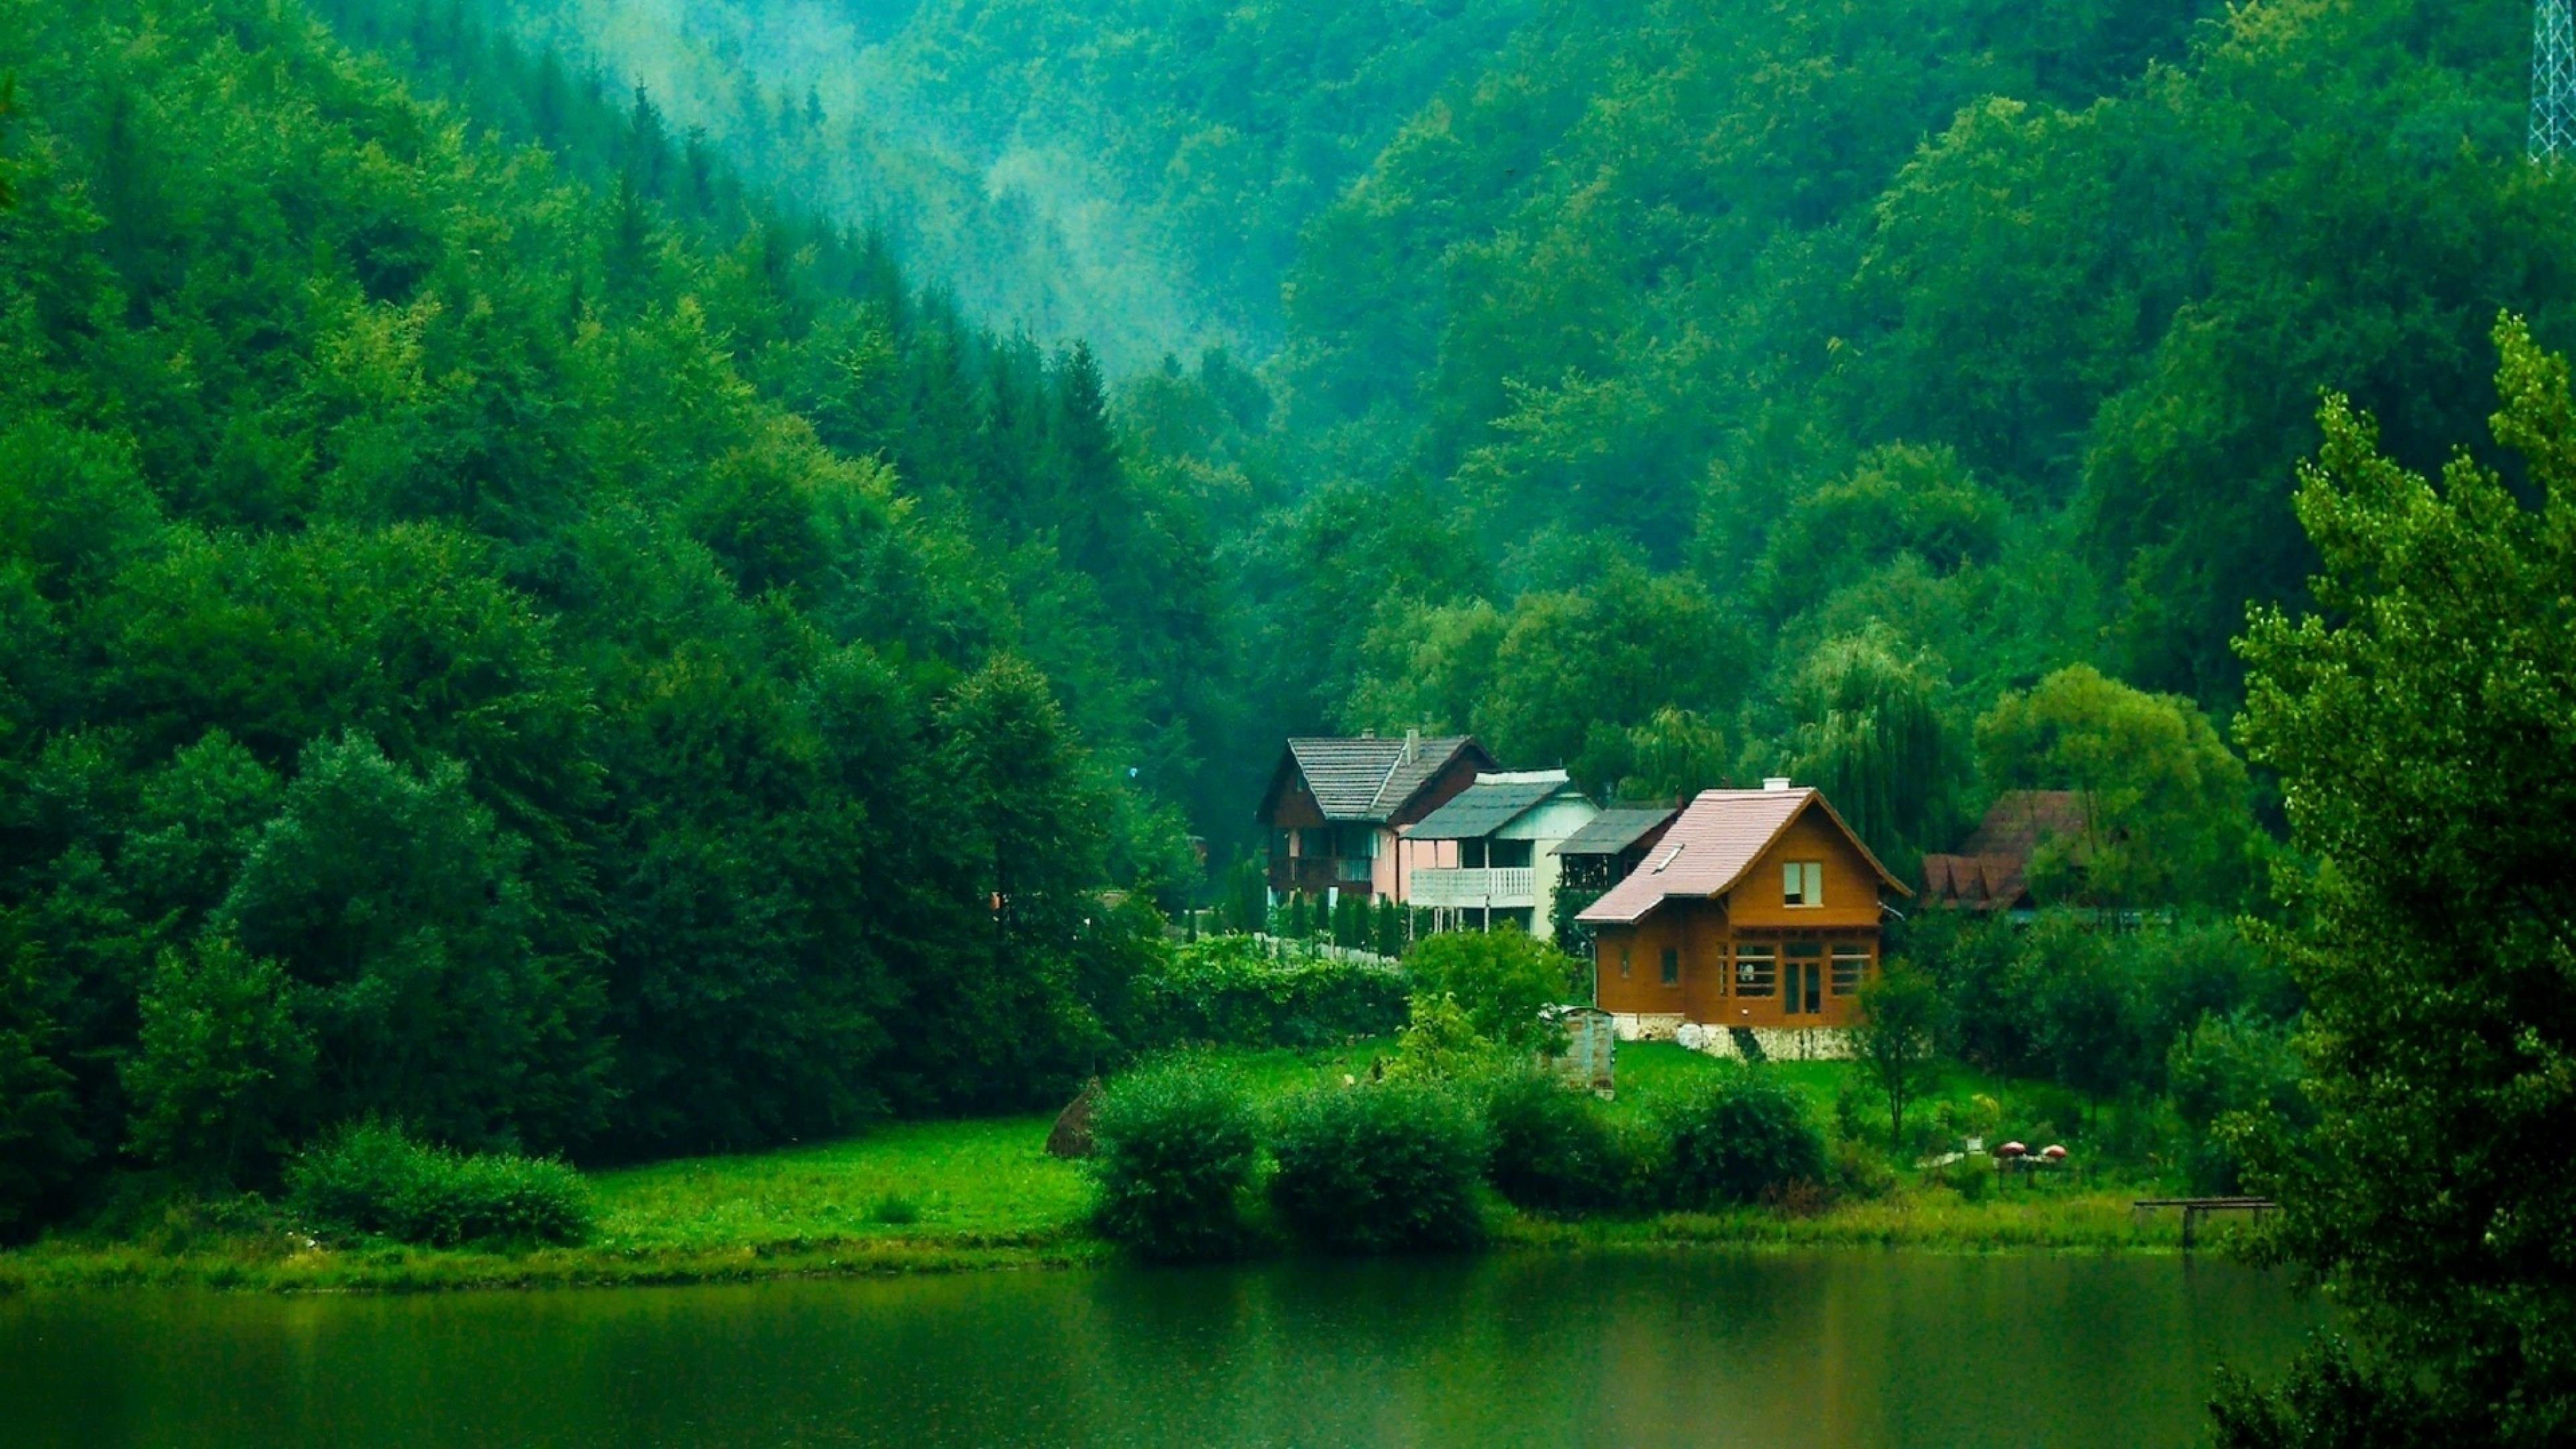 Обои стола 1366. Фахверк Швейцария горы озеро лес. Домик в лесу. Домик в горах у озера. Дом в лесу у озера.